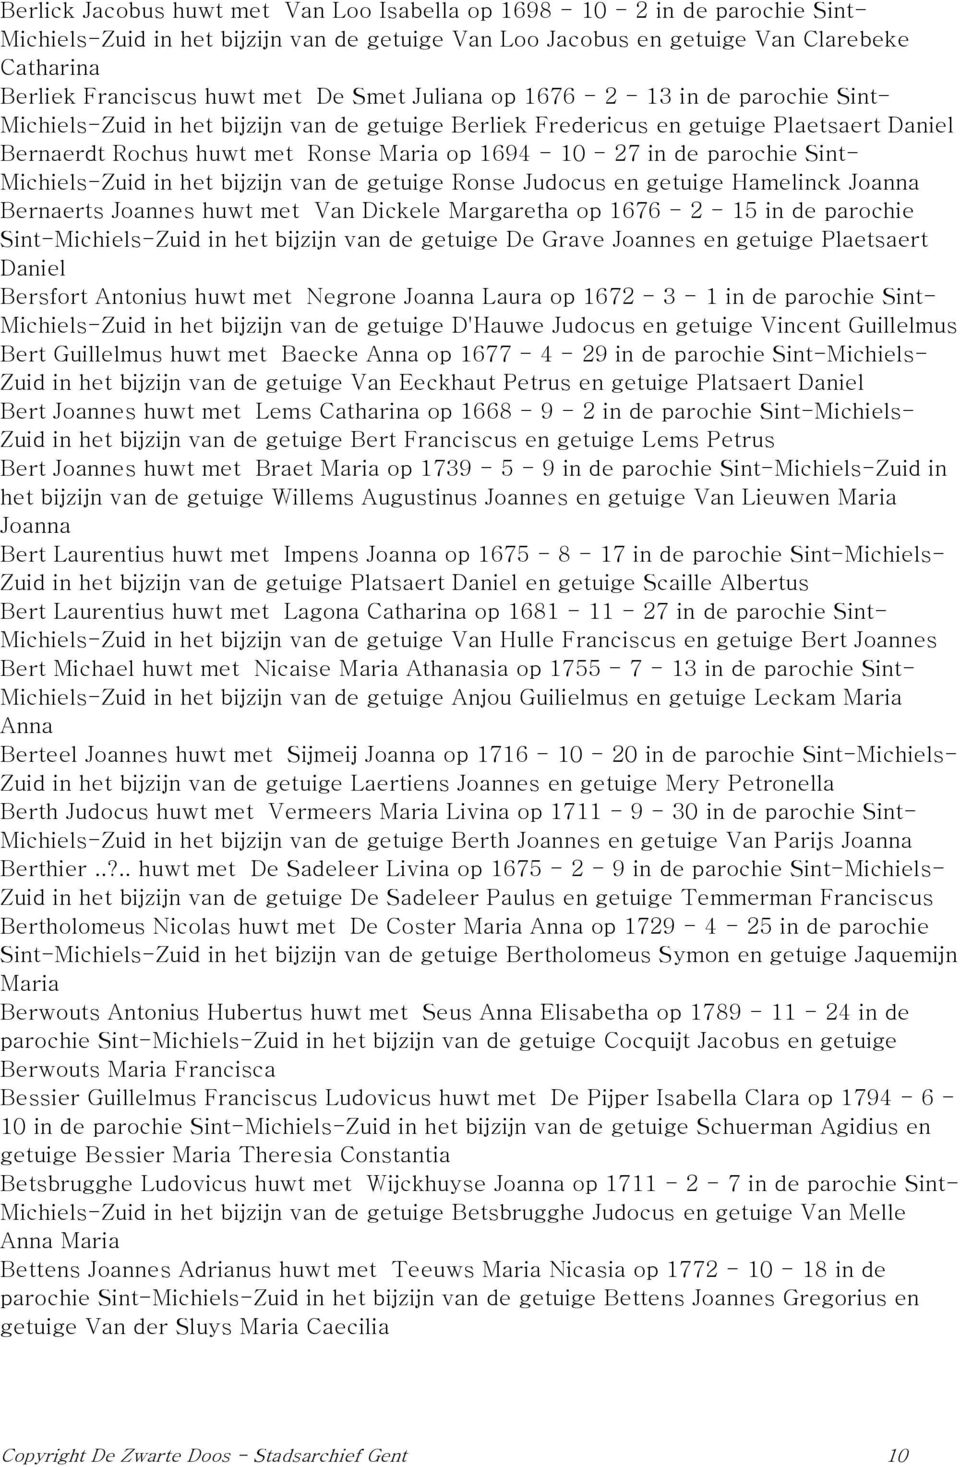 27 in de parochie Sint- Michiels-Zuid in het bijzijn van de getuige Ronse Judocus en getuige Hamelinck Joanna Bernaerts Joannes huwt met Van Dickele Margaretha op 1676-2 - 15 in de parochie